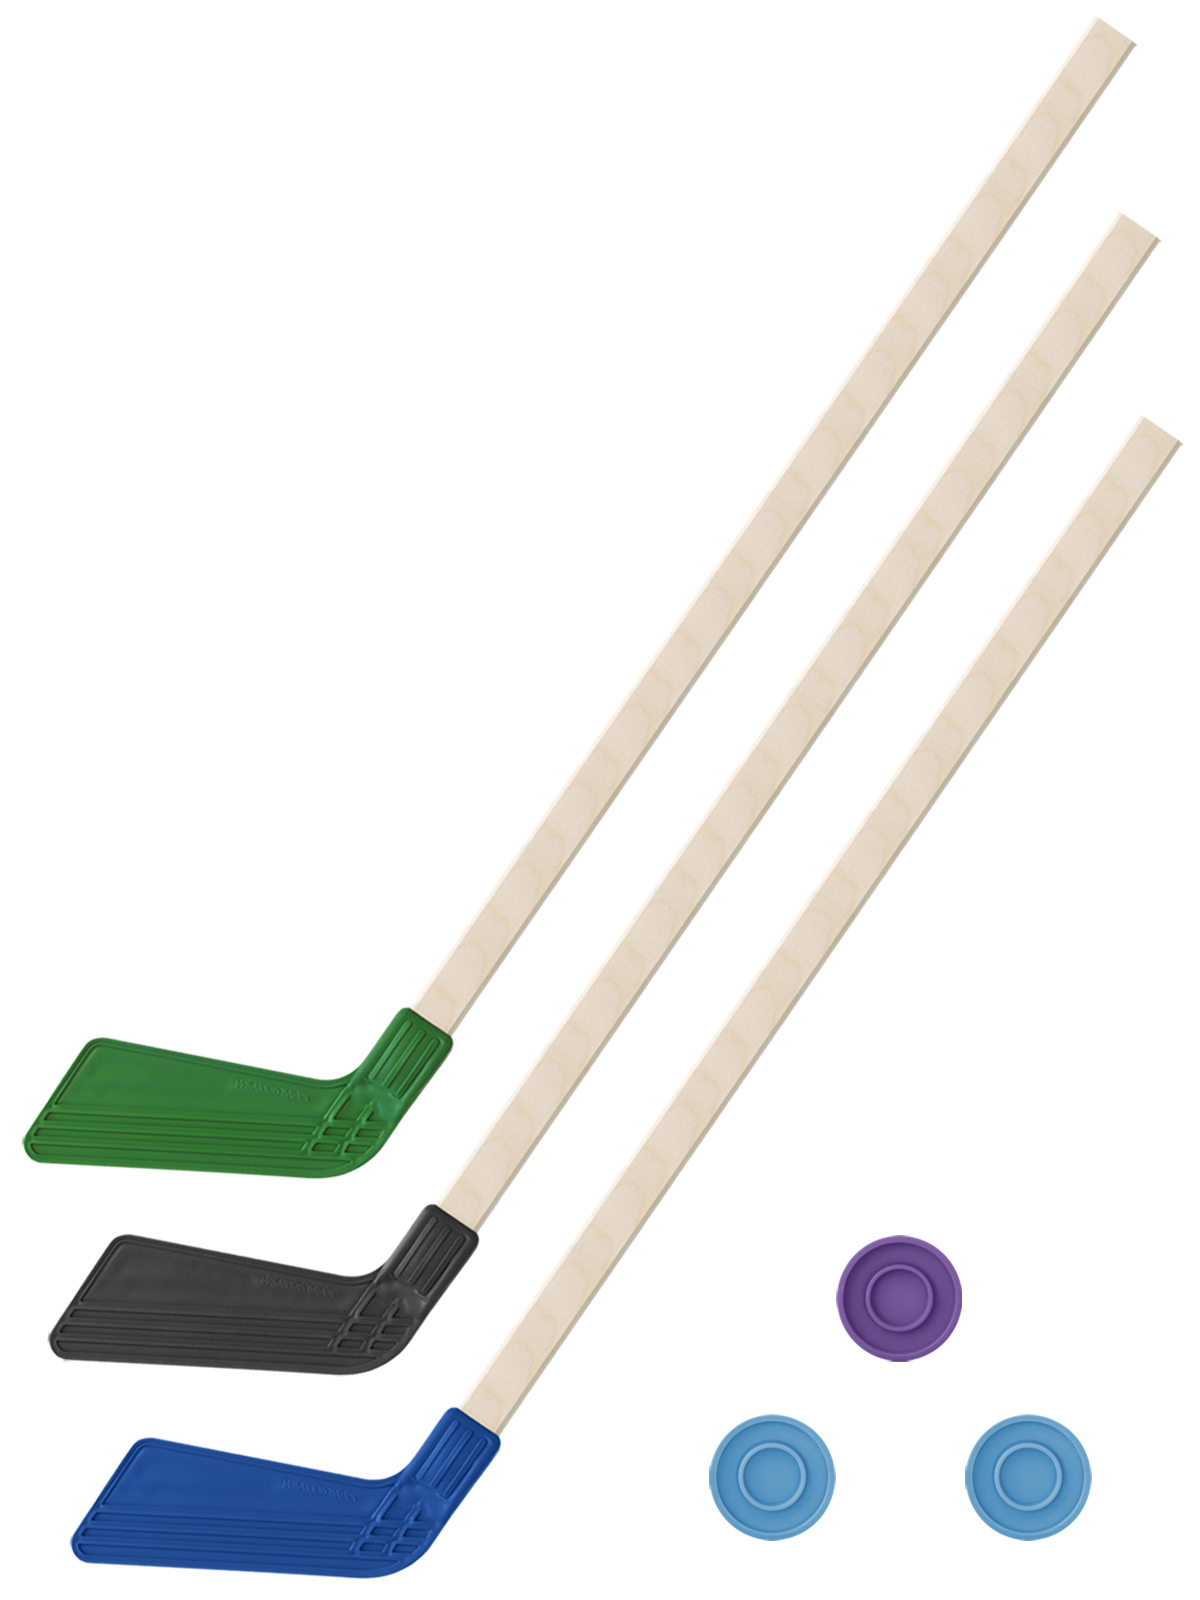 Детский хоккейный набор Задира-плюс 3 в 1 Клюшка хоккейная 80см (зел,черн,син) + 3 шайбы